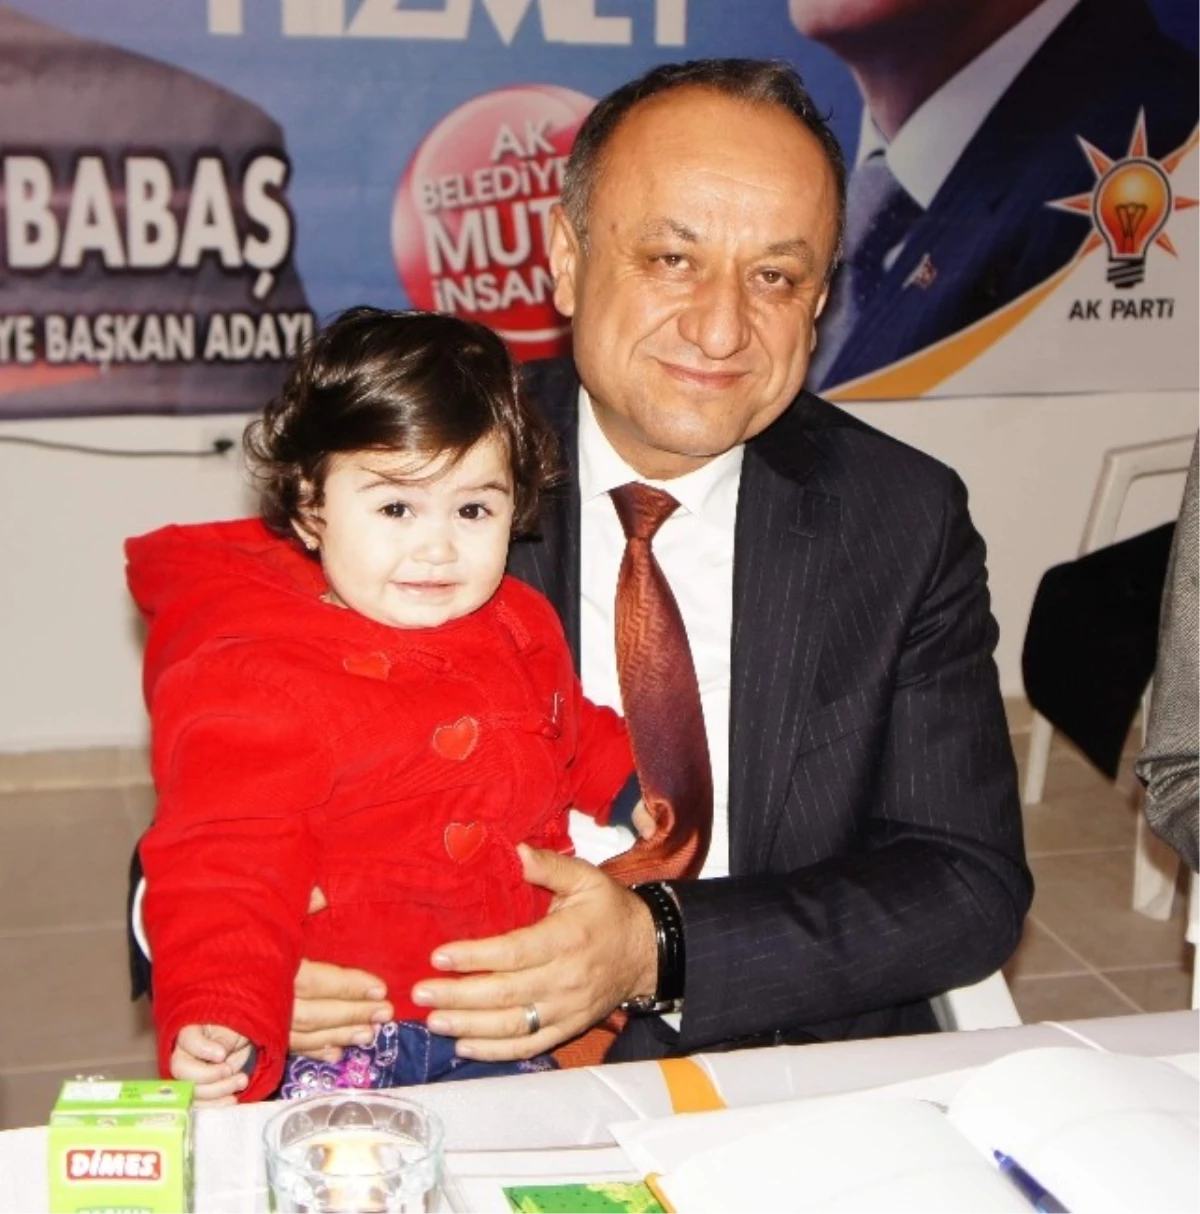 AK Parti Kastamonu Belediye Başkan Adayı Tahsin Babaş,